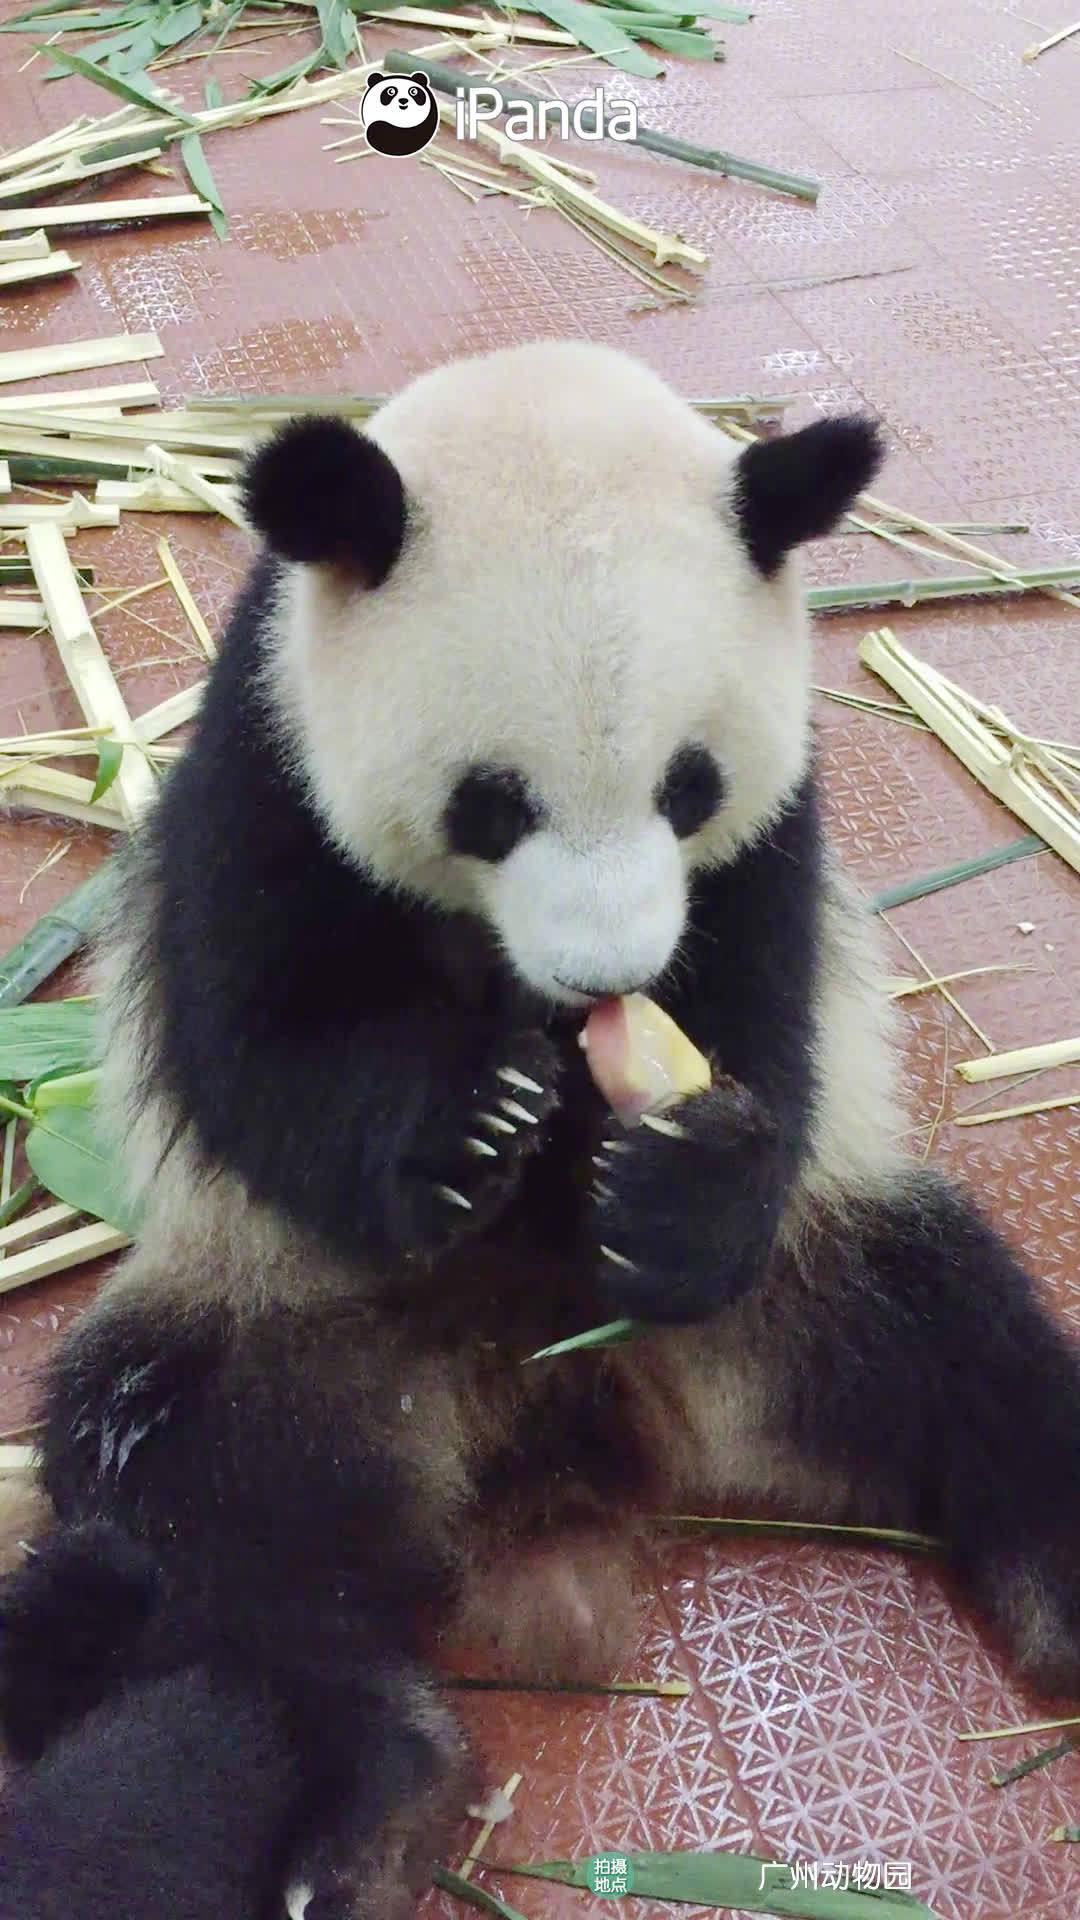 大熊猫吃竹子图片可爱壁纸图片-壁纸图片大全